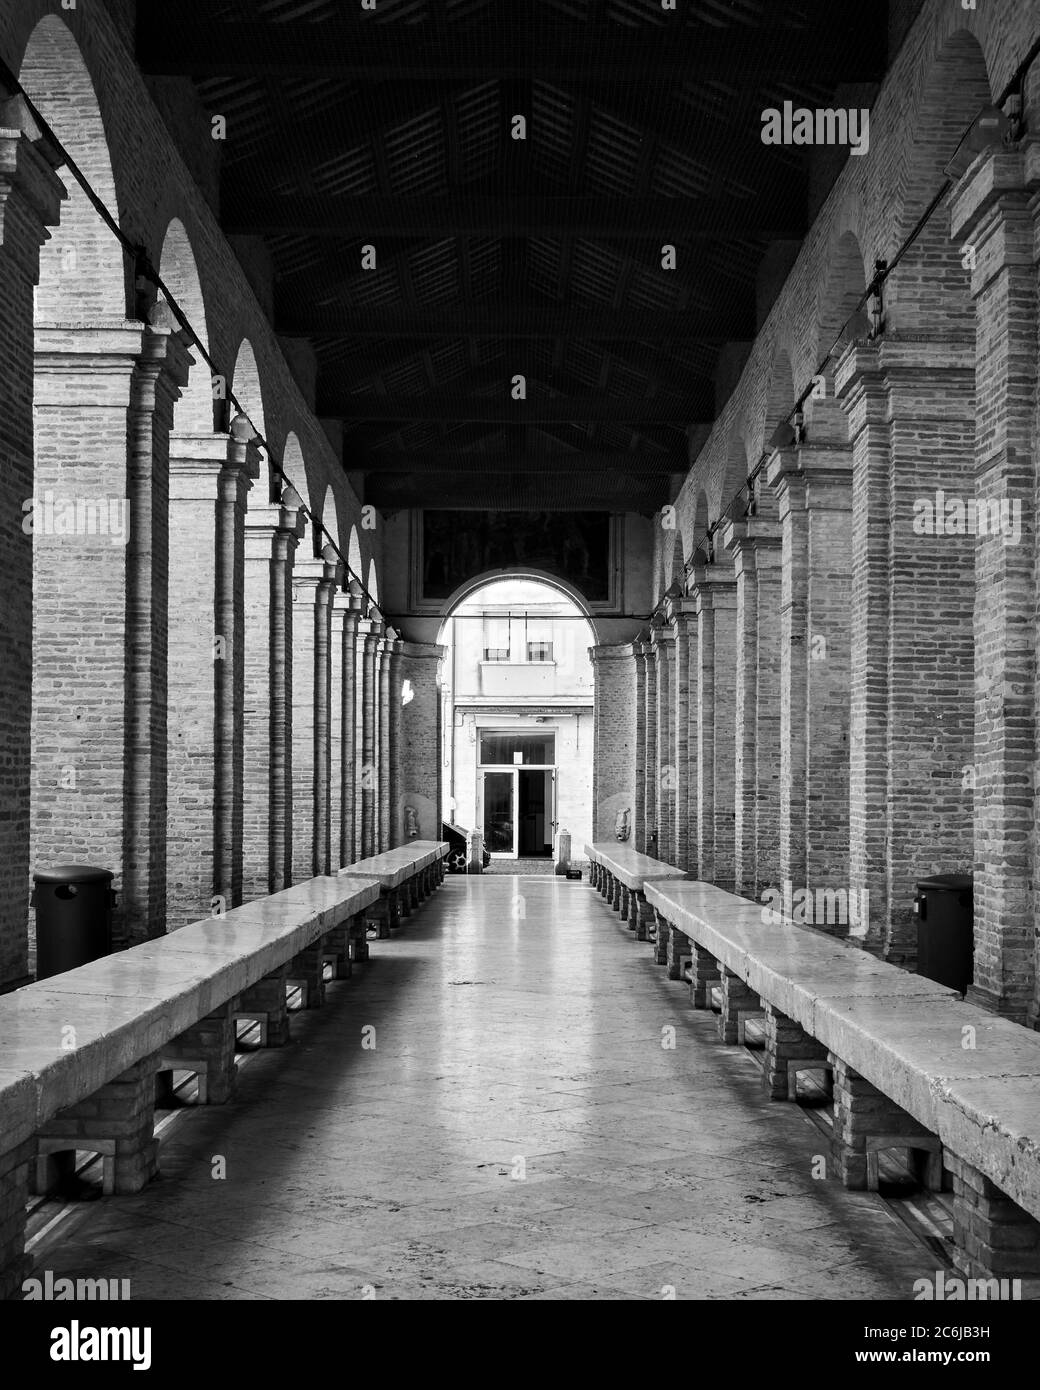 Vecchio mercato del pesce a Rimini, Italia. Simmetria e prospettiva. Fotografia architettonica in bianco e nero Foto Stock